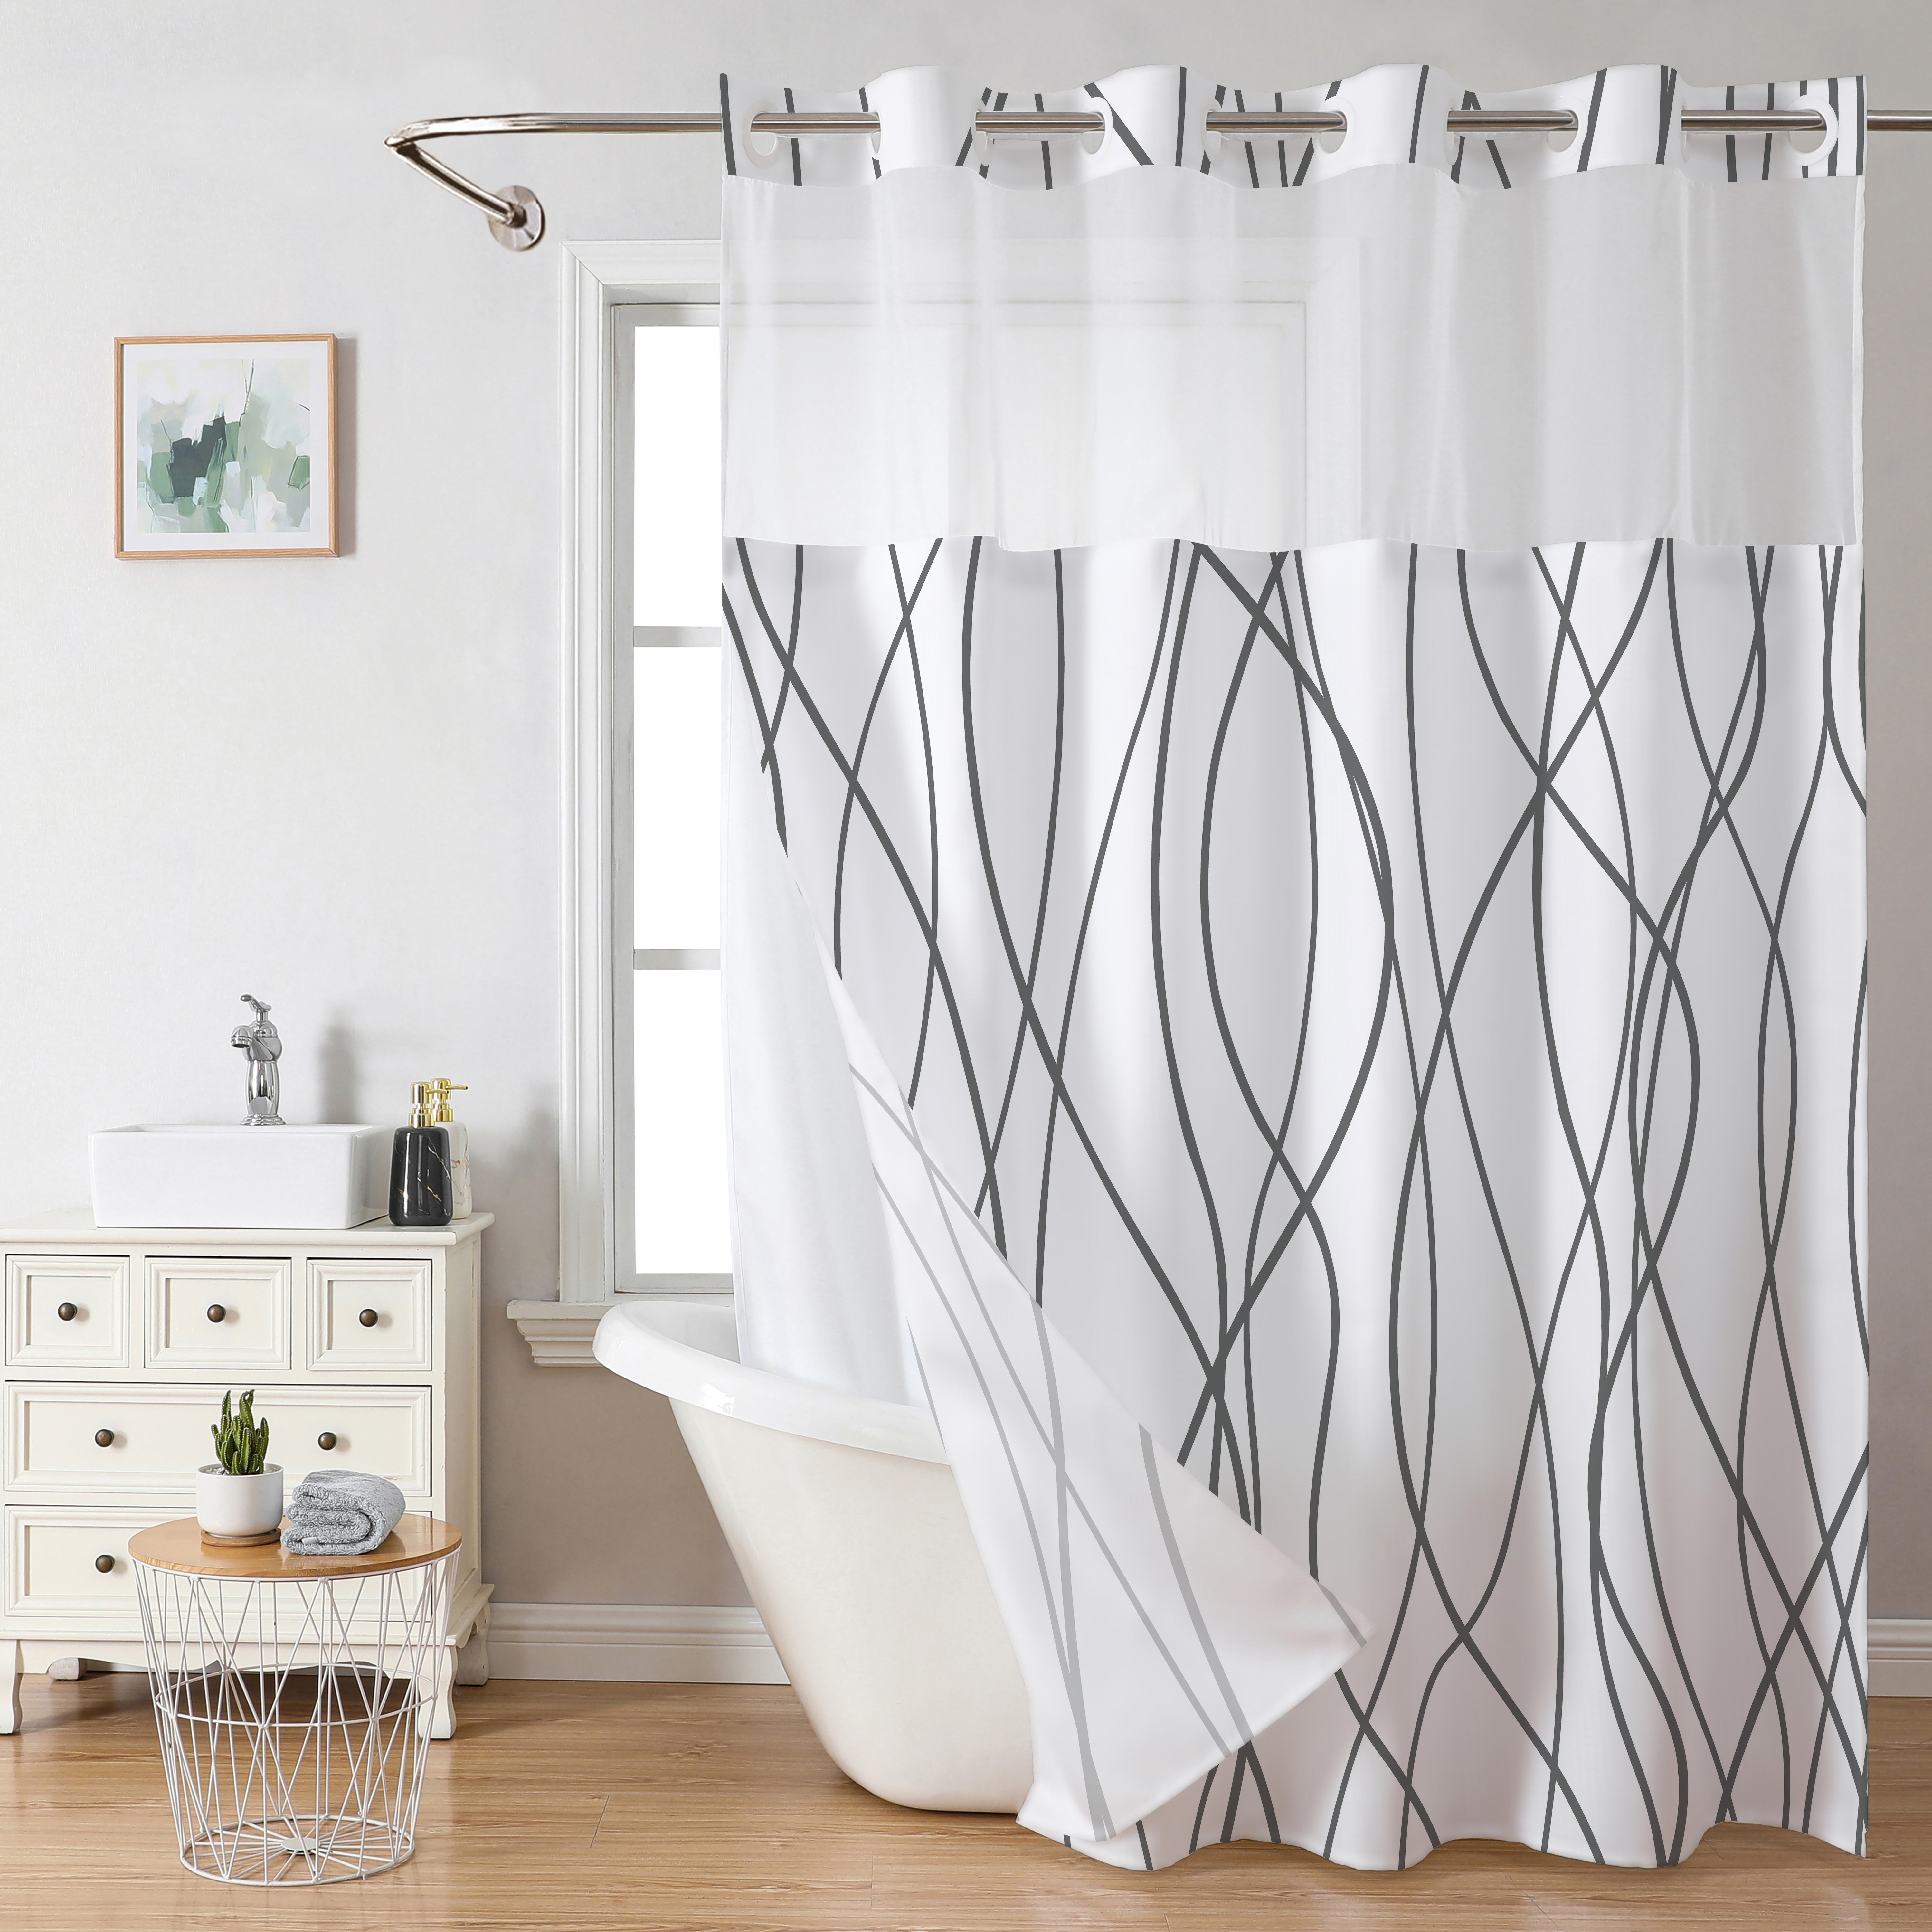 Juego de cortina de ducha blanca con forro a presión, cortinas de ducha de  poliéster para baño, lavable a máquina, tela pesada y ventana superior de